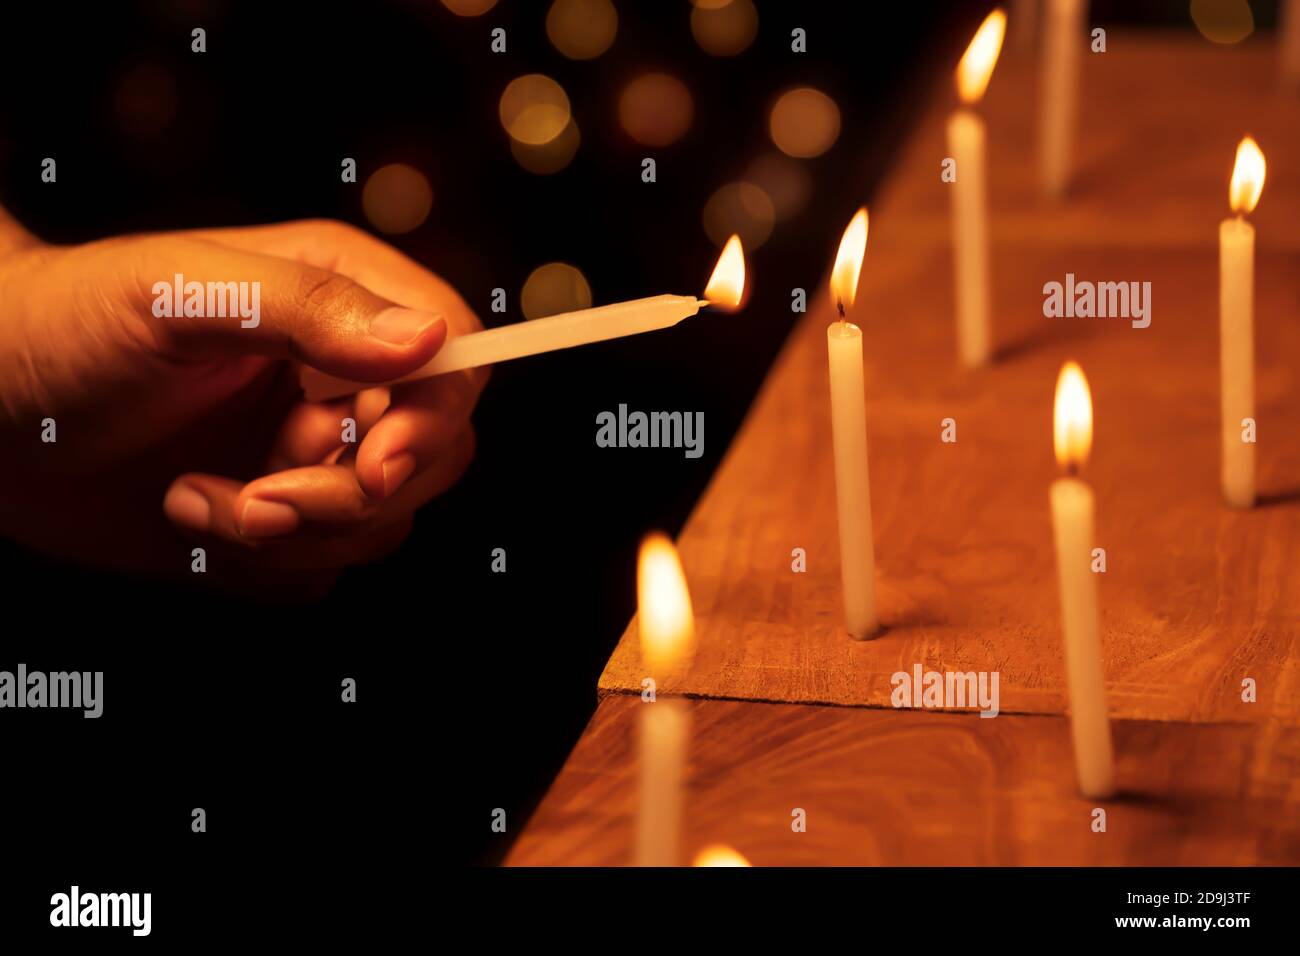 Mano maschile che illumina o illumina le candele nella notte di Diwali al tempio, chiesa. Immagine di sfondo per decorazioni natalizie, feste, striscioni. Foto Stock